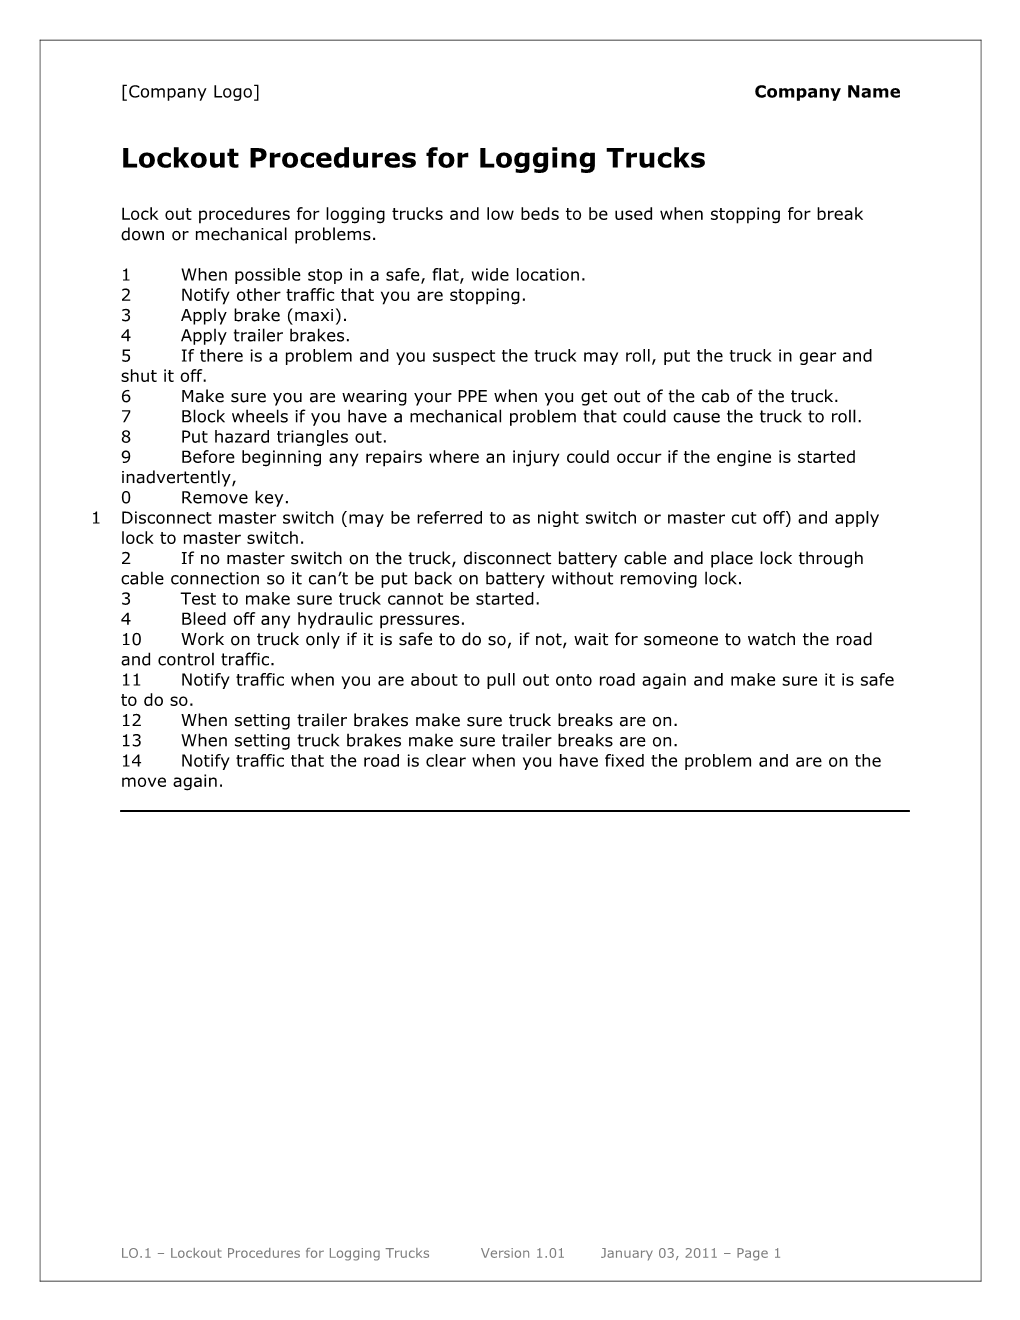 Lockout Procedures for Logging Trucks